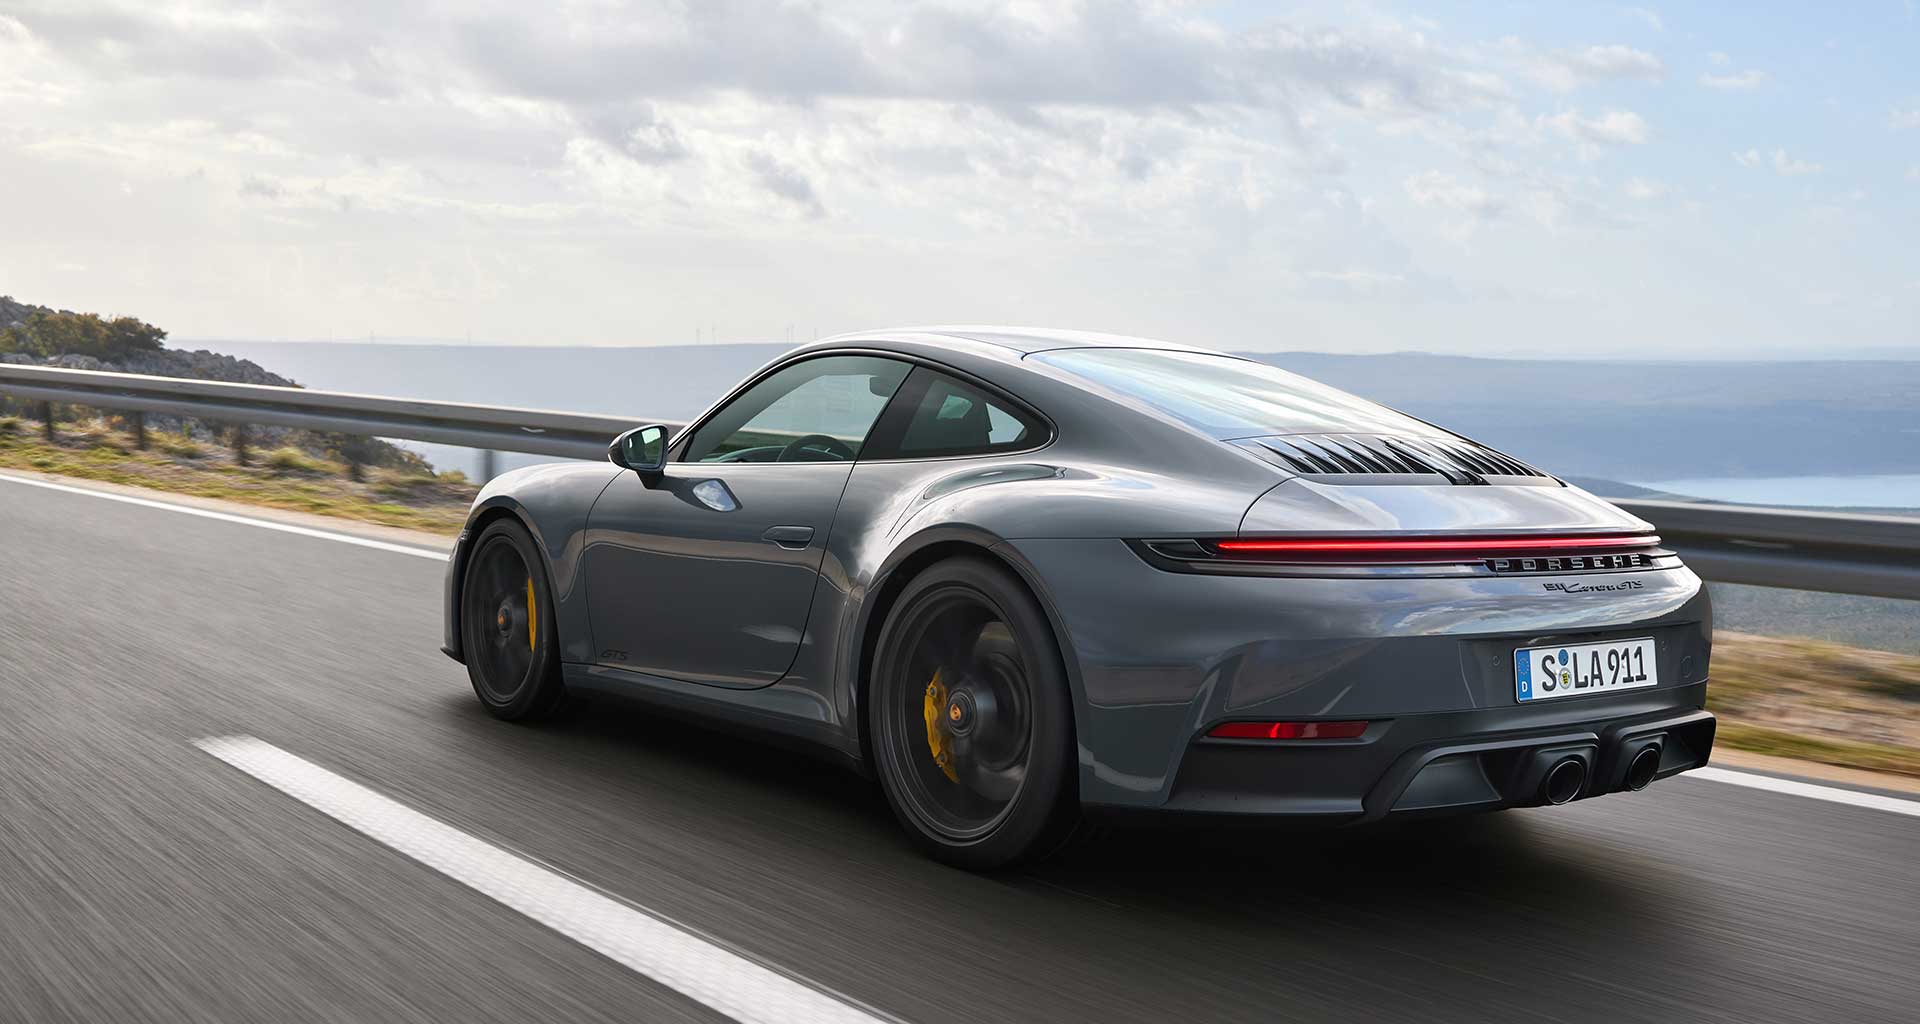 Der neue Porsche 911 Carrera GTS: Innovativer, leichter T-Hybrid mit neu entwickeltem 3,6 Liter Sechszylinder-Boxermotor, elektrischem Abgasturbolader und Elektromaschine